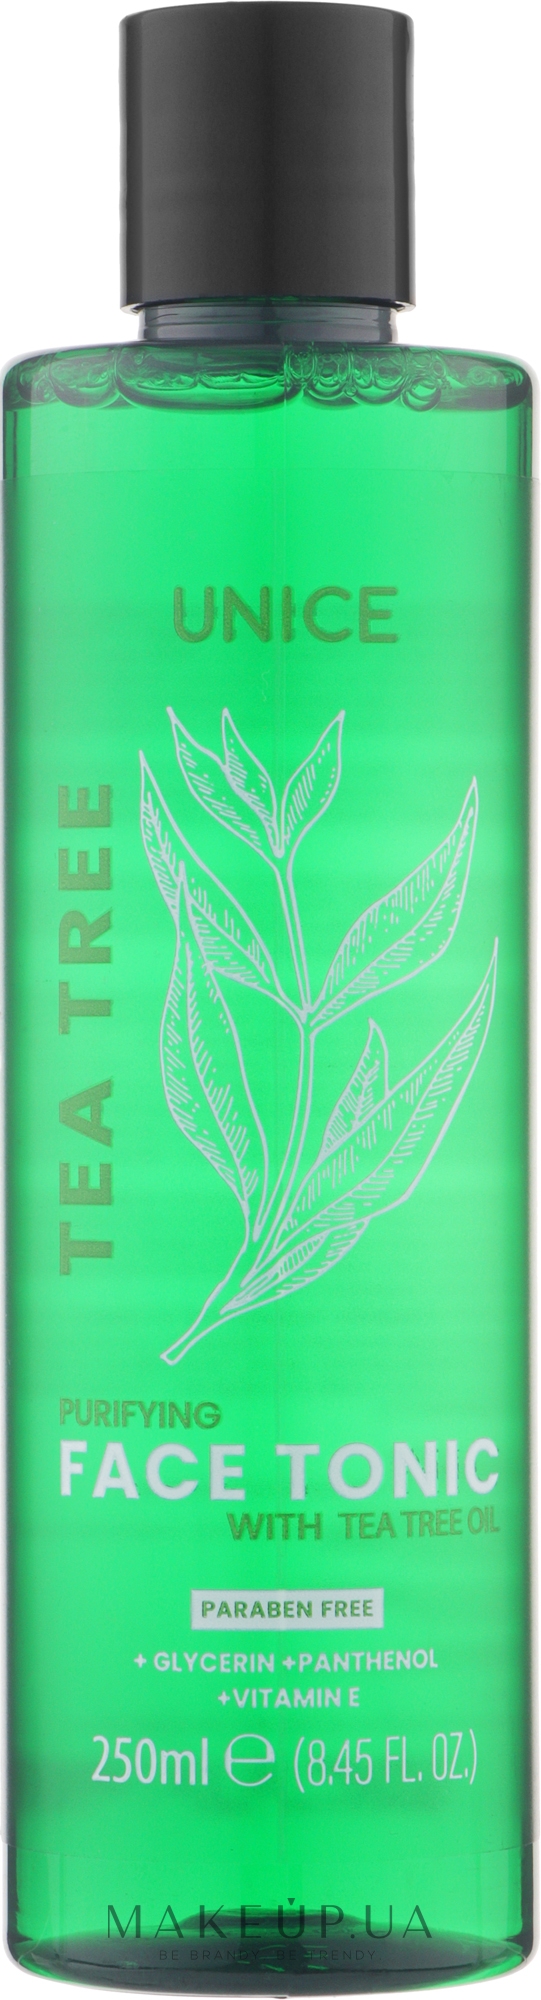 Тоник для лица с маслом чайного дерева - Unice Tea Tree Purifying Face Tonic — фото 250ml